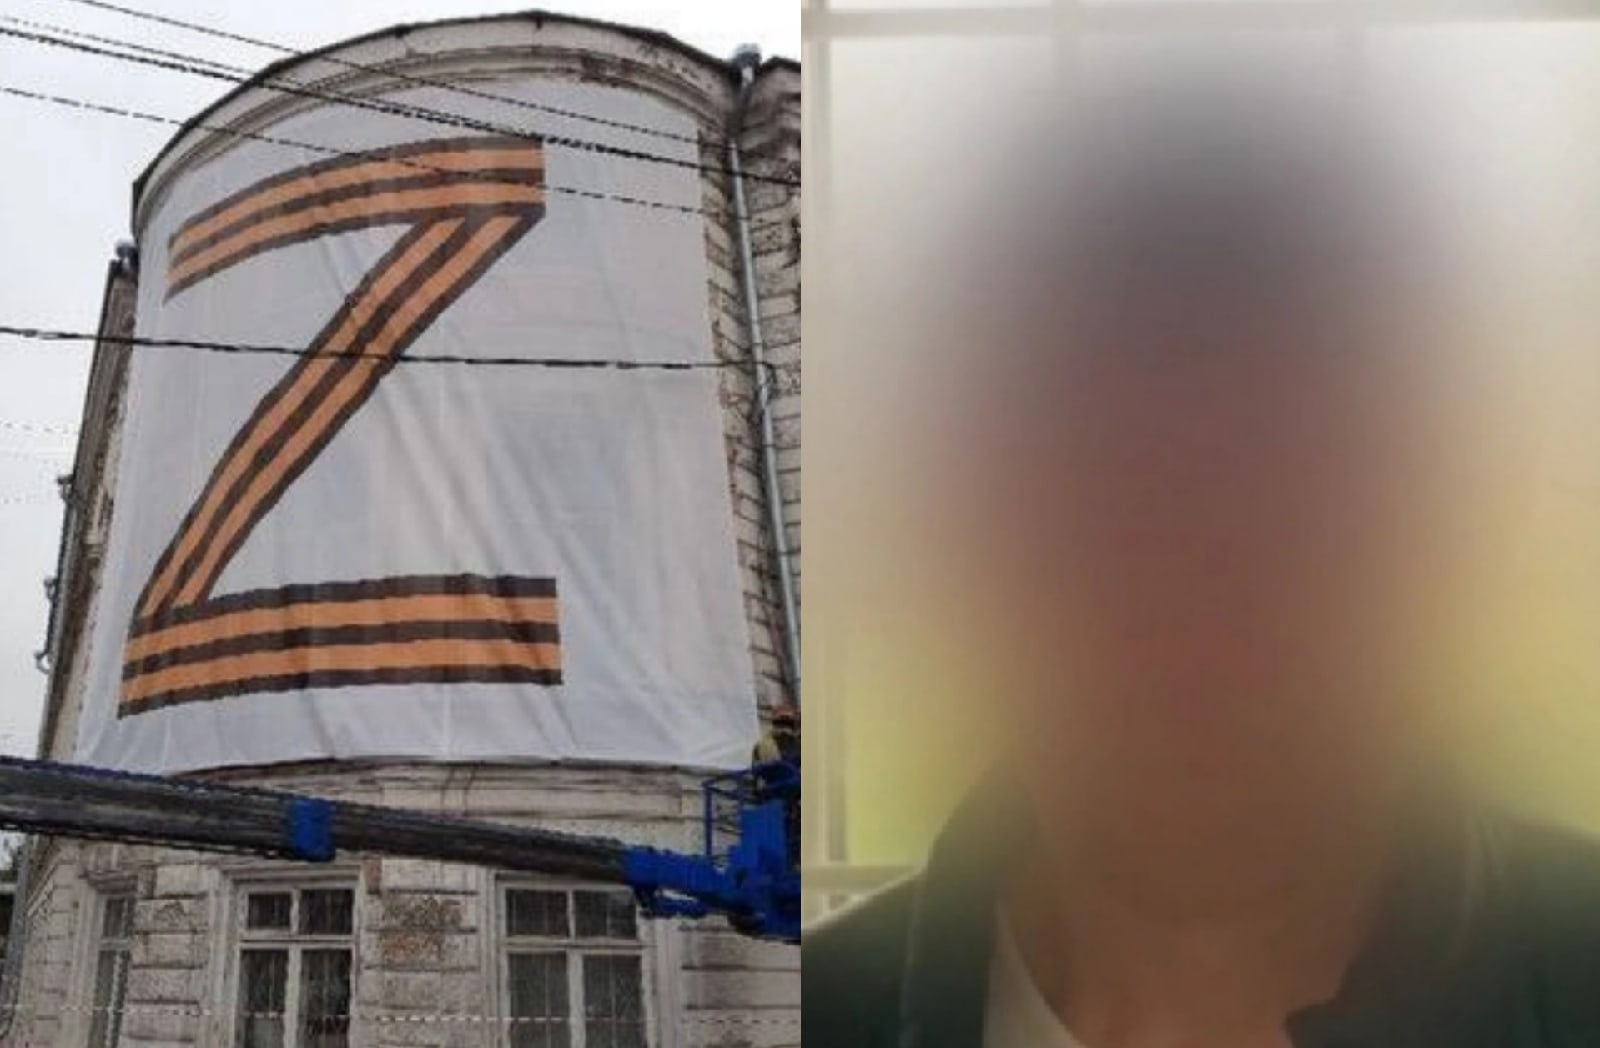  Поджигателем баннера с символикой Z в Ярославле оказался наркодилер